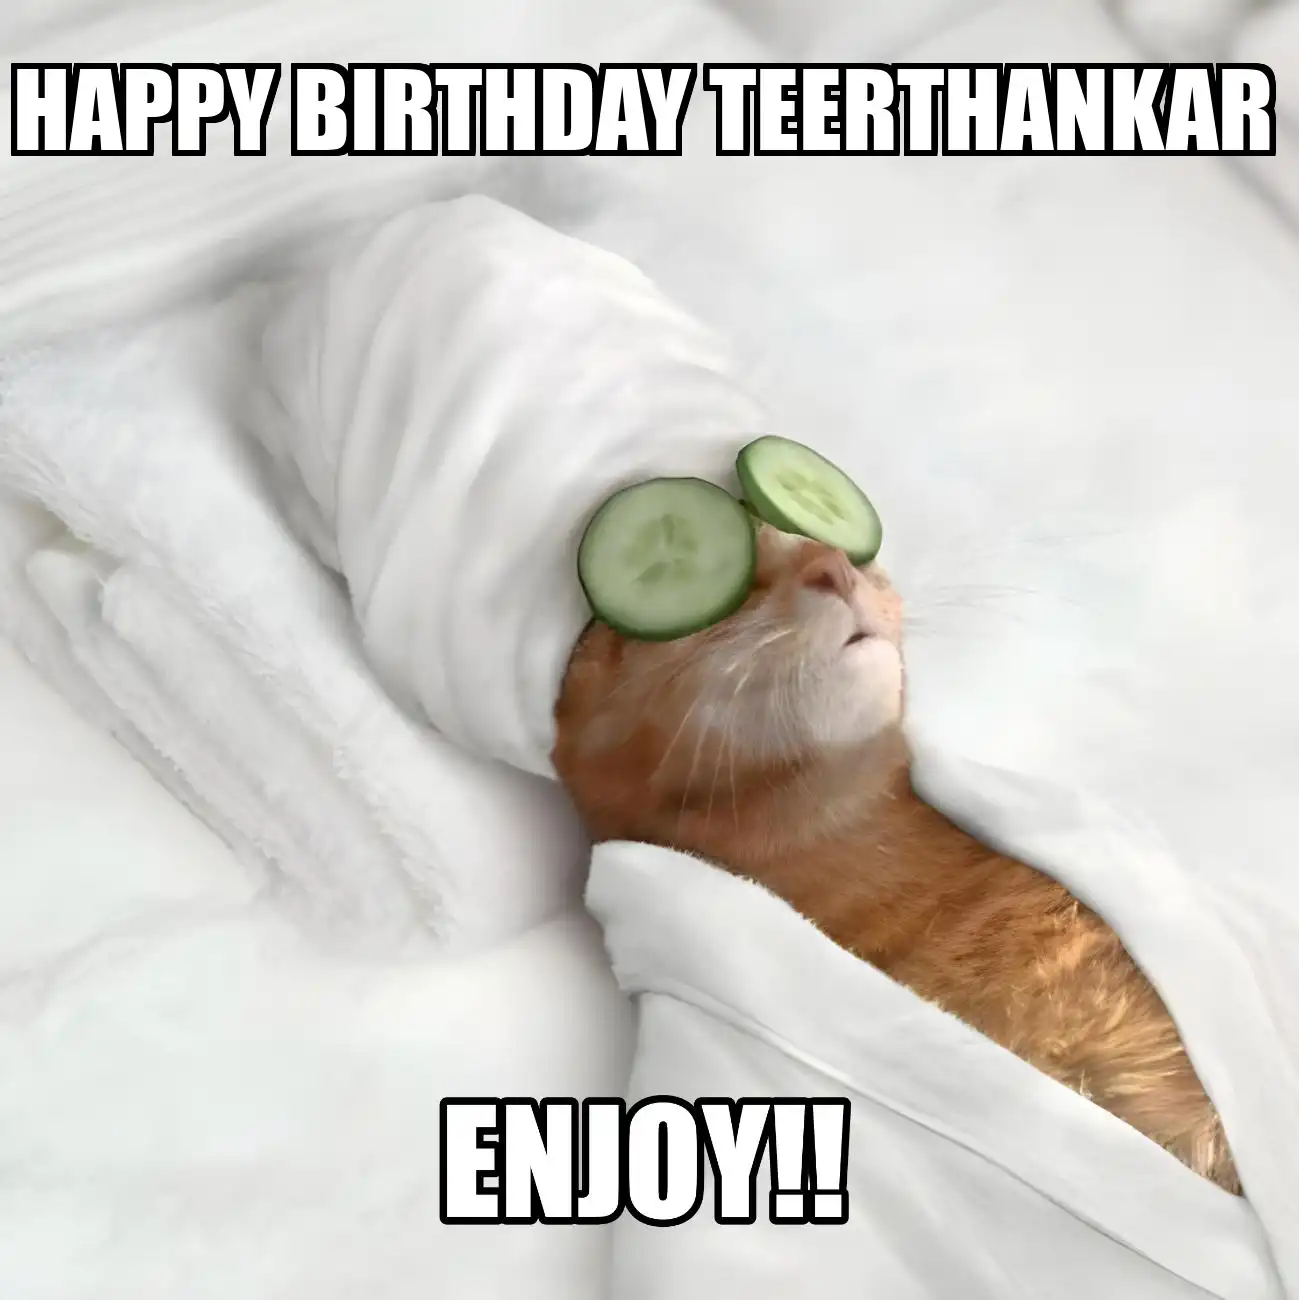 Happy Birthday Teerthankar Enjoy Cat Meme